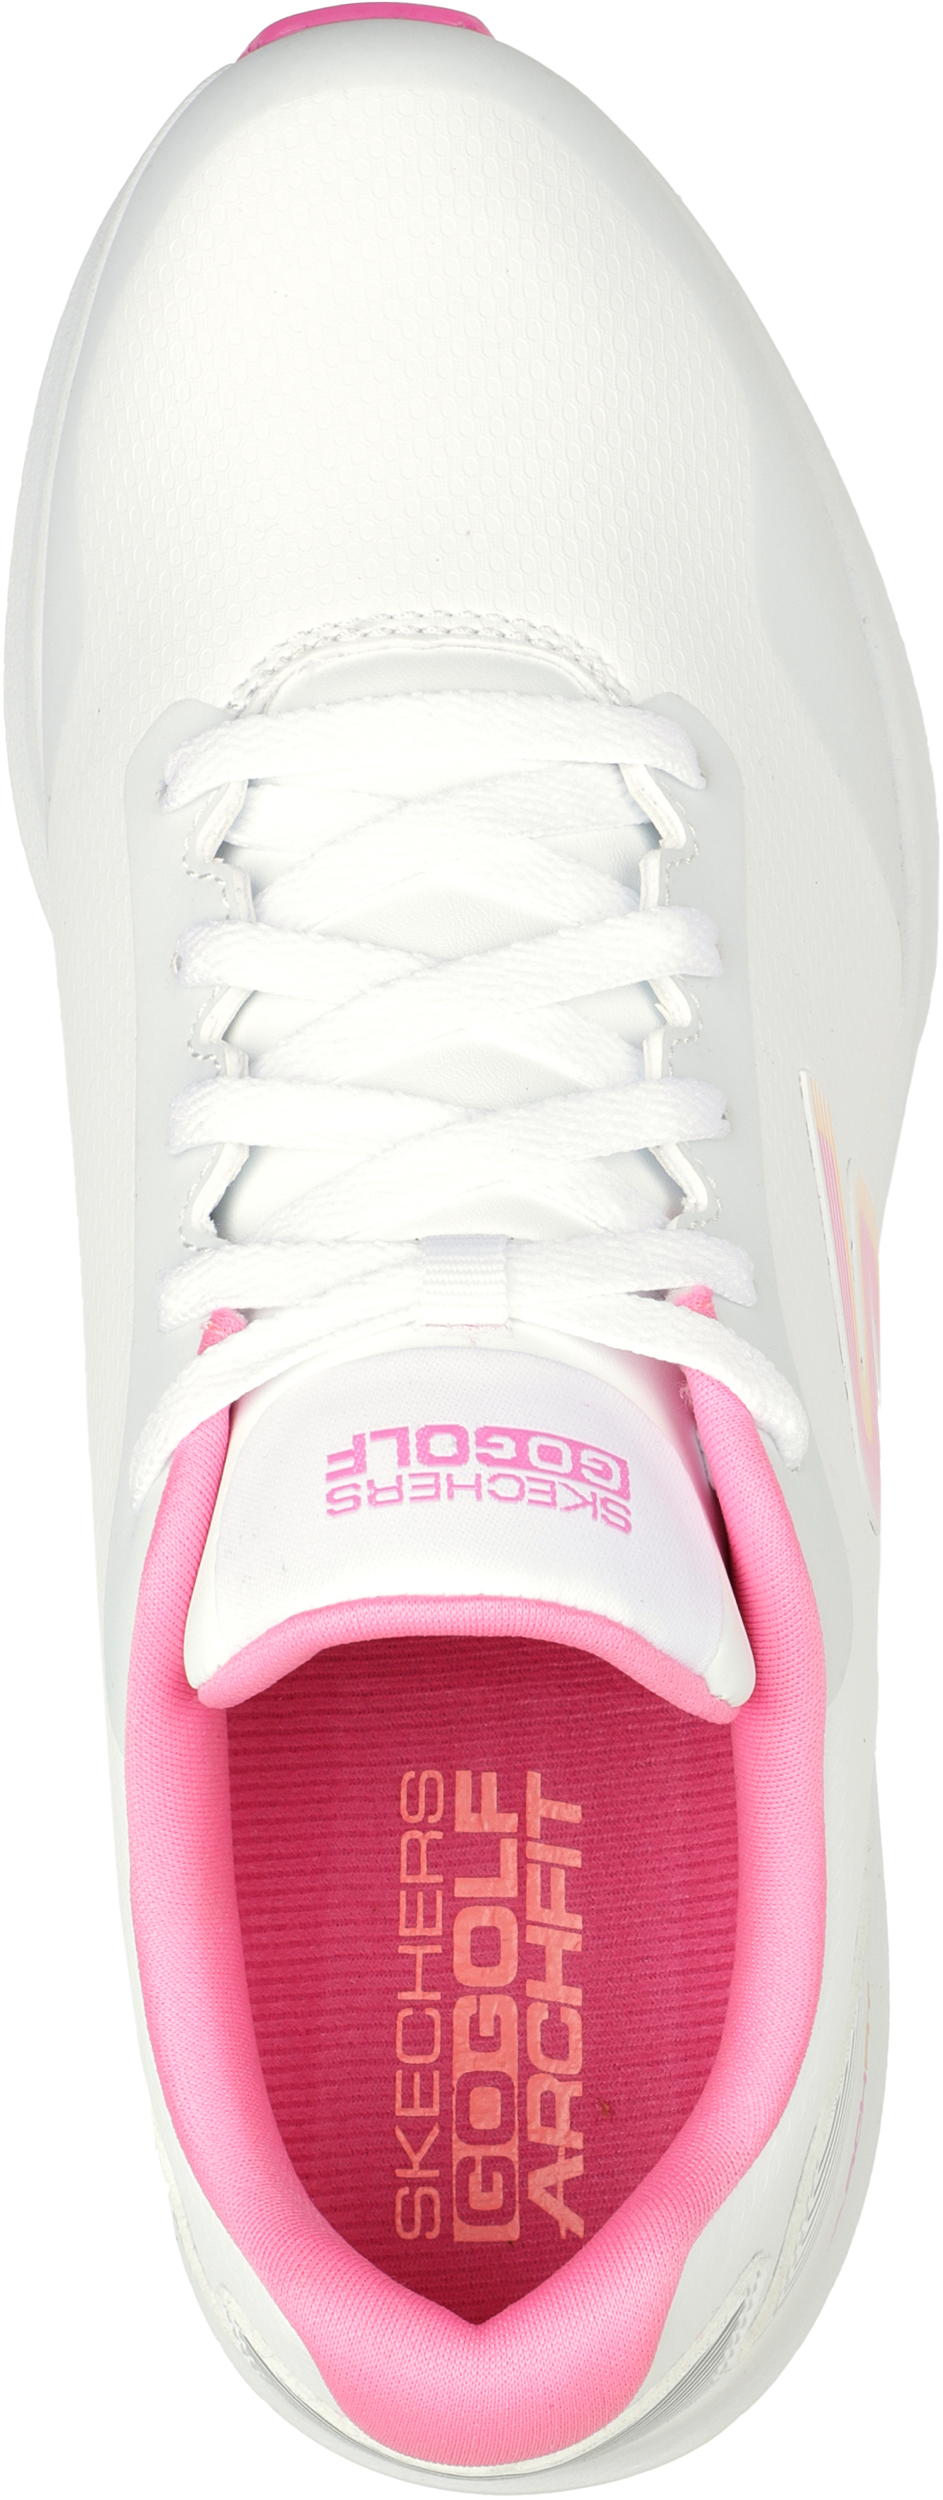 Skechers Max 2 Golfschuh, white/pink